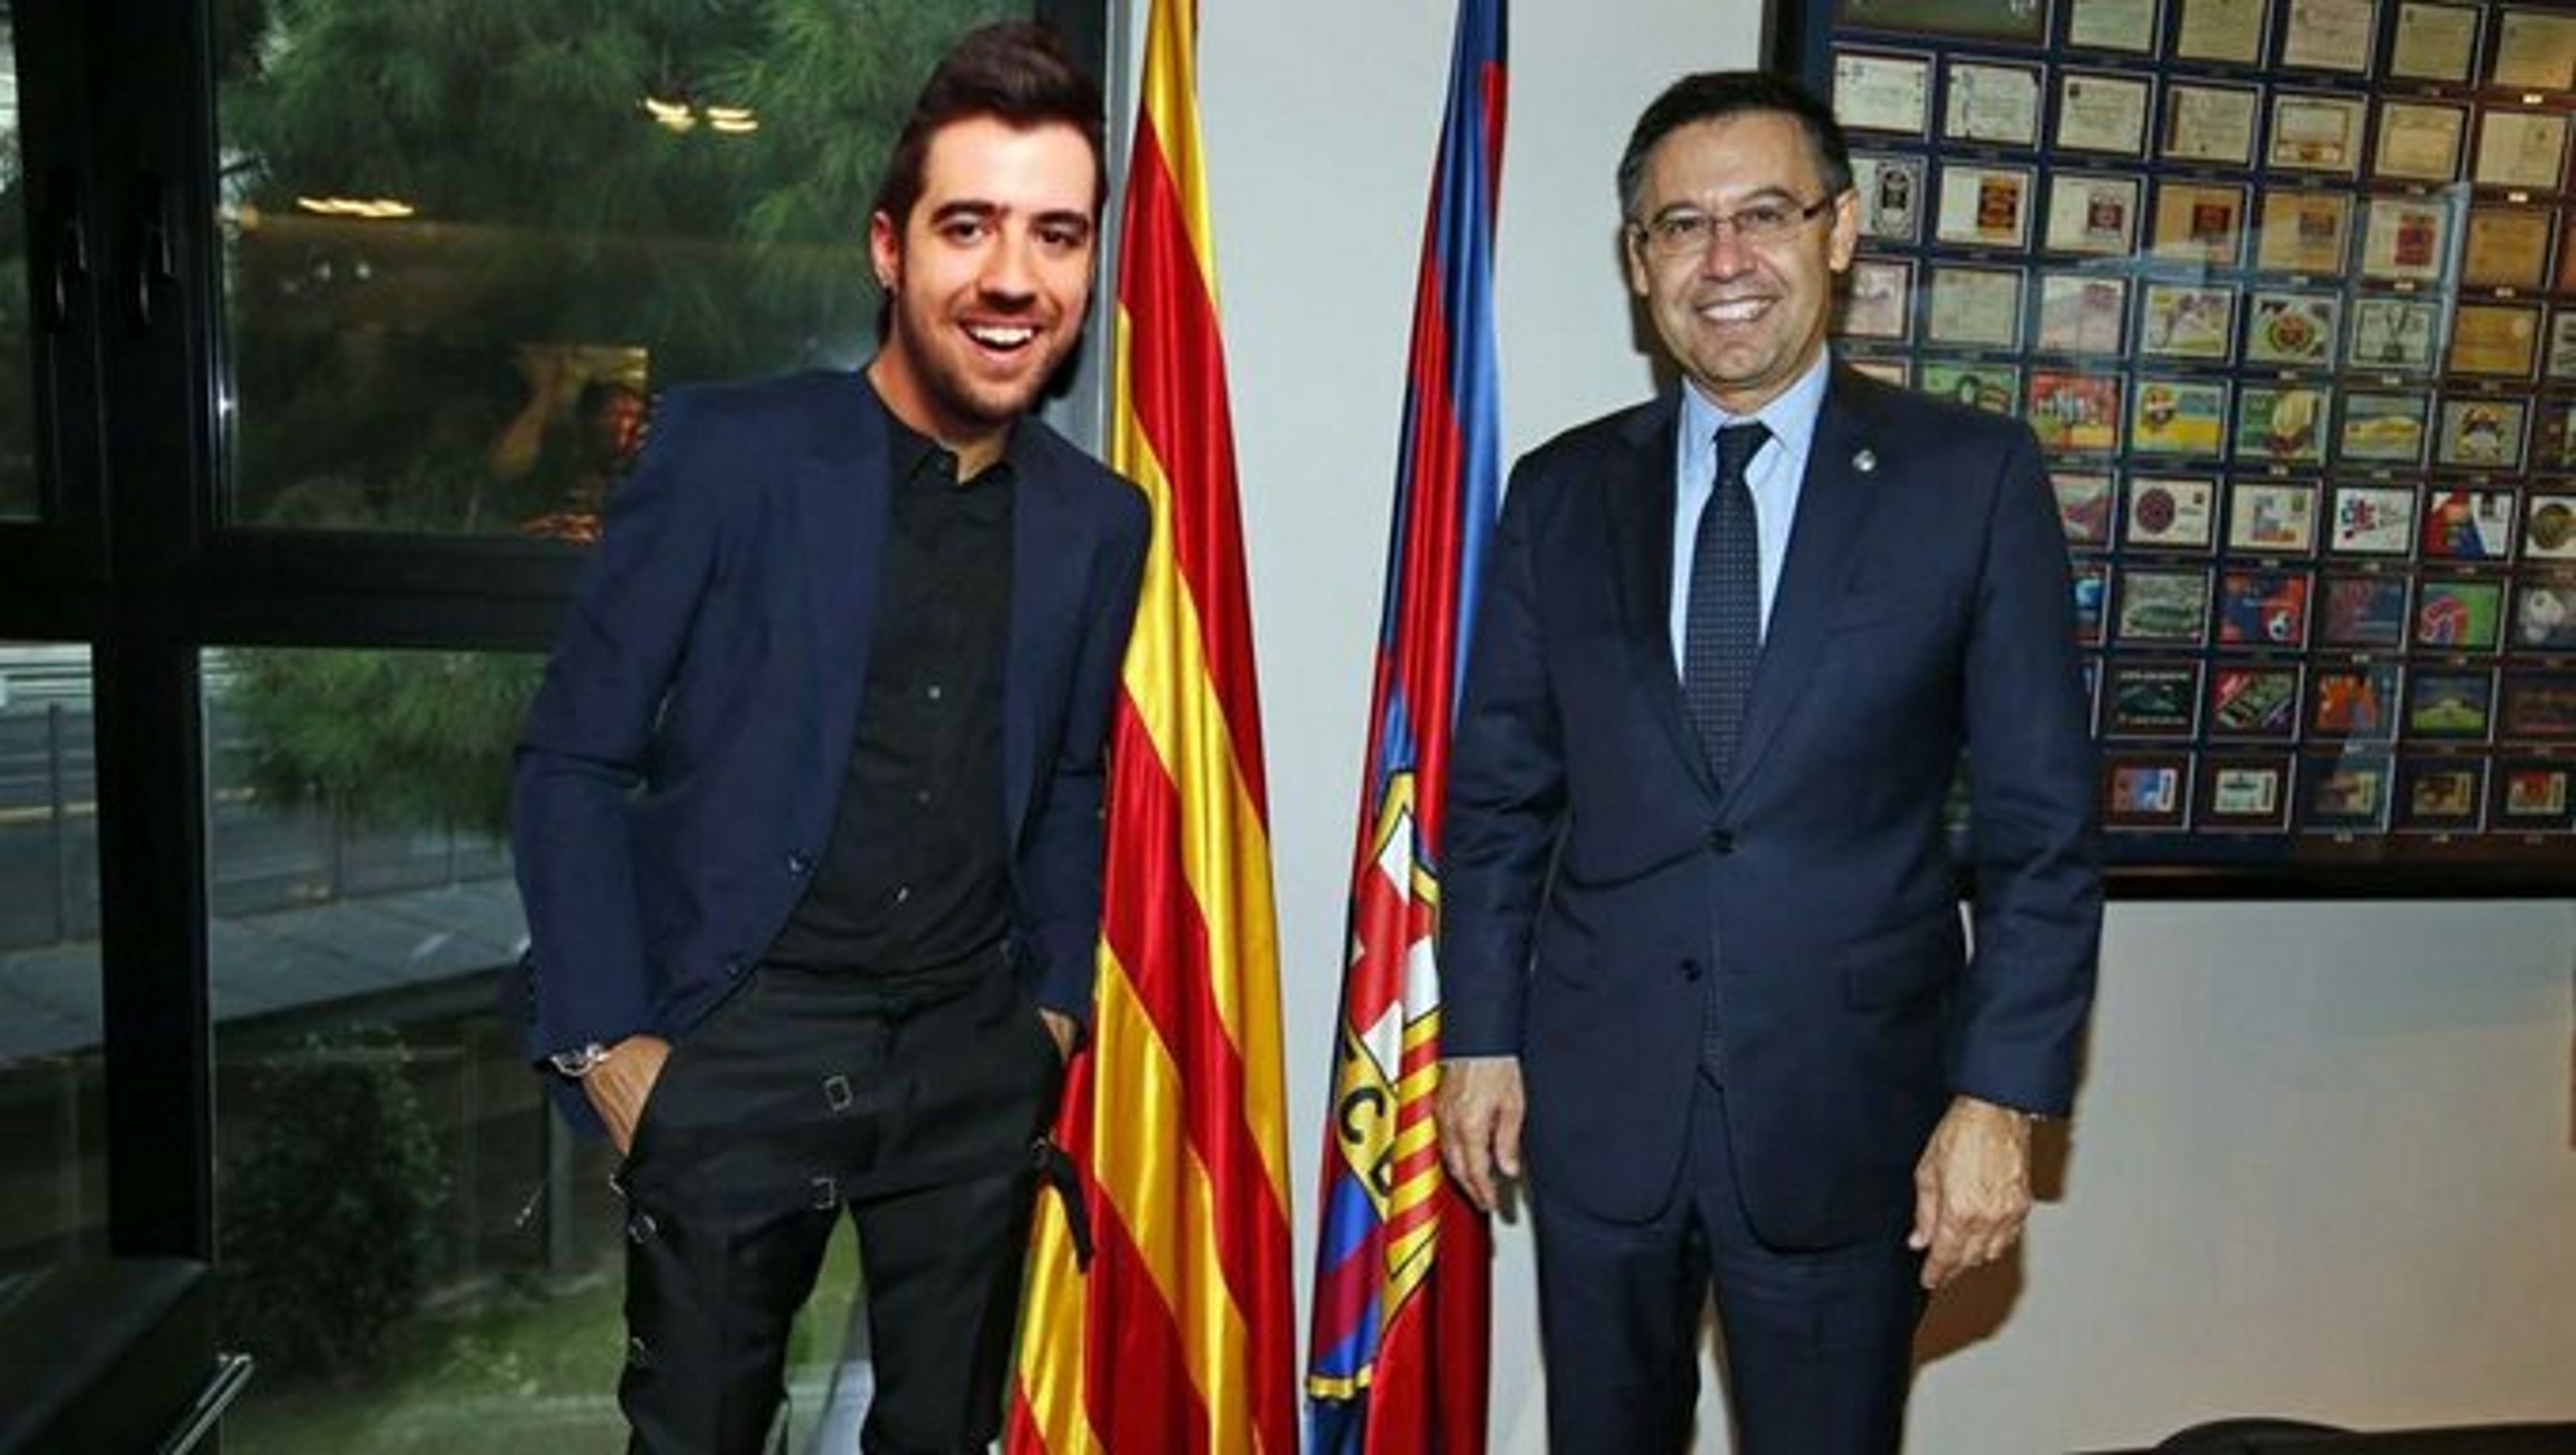 AuronPlay, ¿de "ministro" de El Salvador a presidente del Barça?